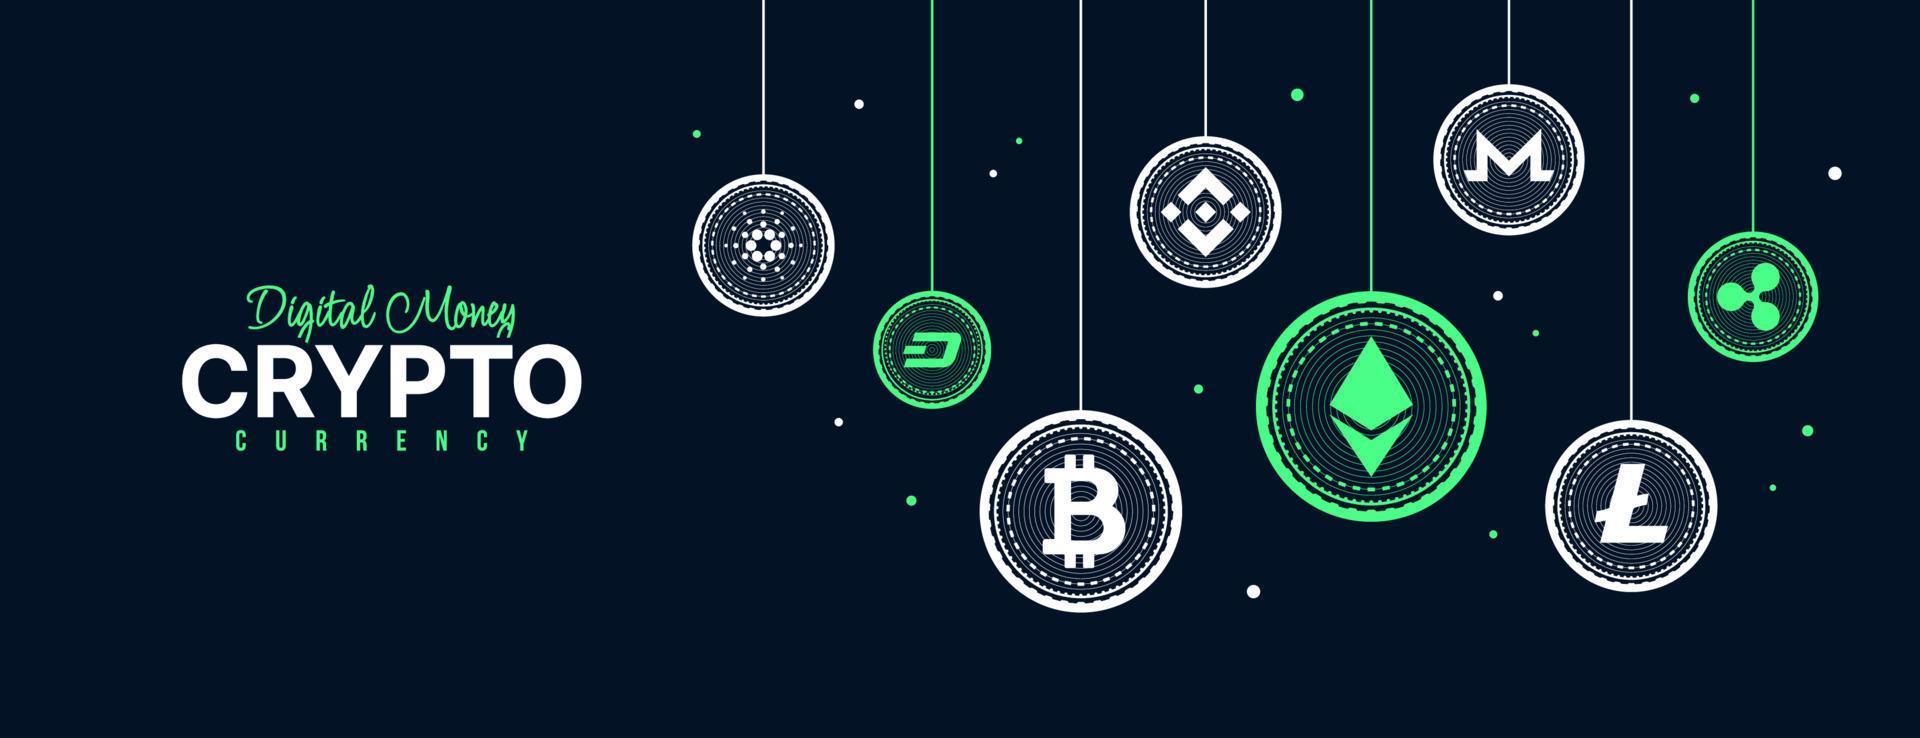 sfondo di icone di criptovaluta, scambio di denaro digitale di banner con tecnologia blockchain, mining di criptovalute e concetto finanziario vettore